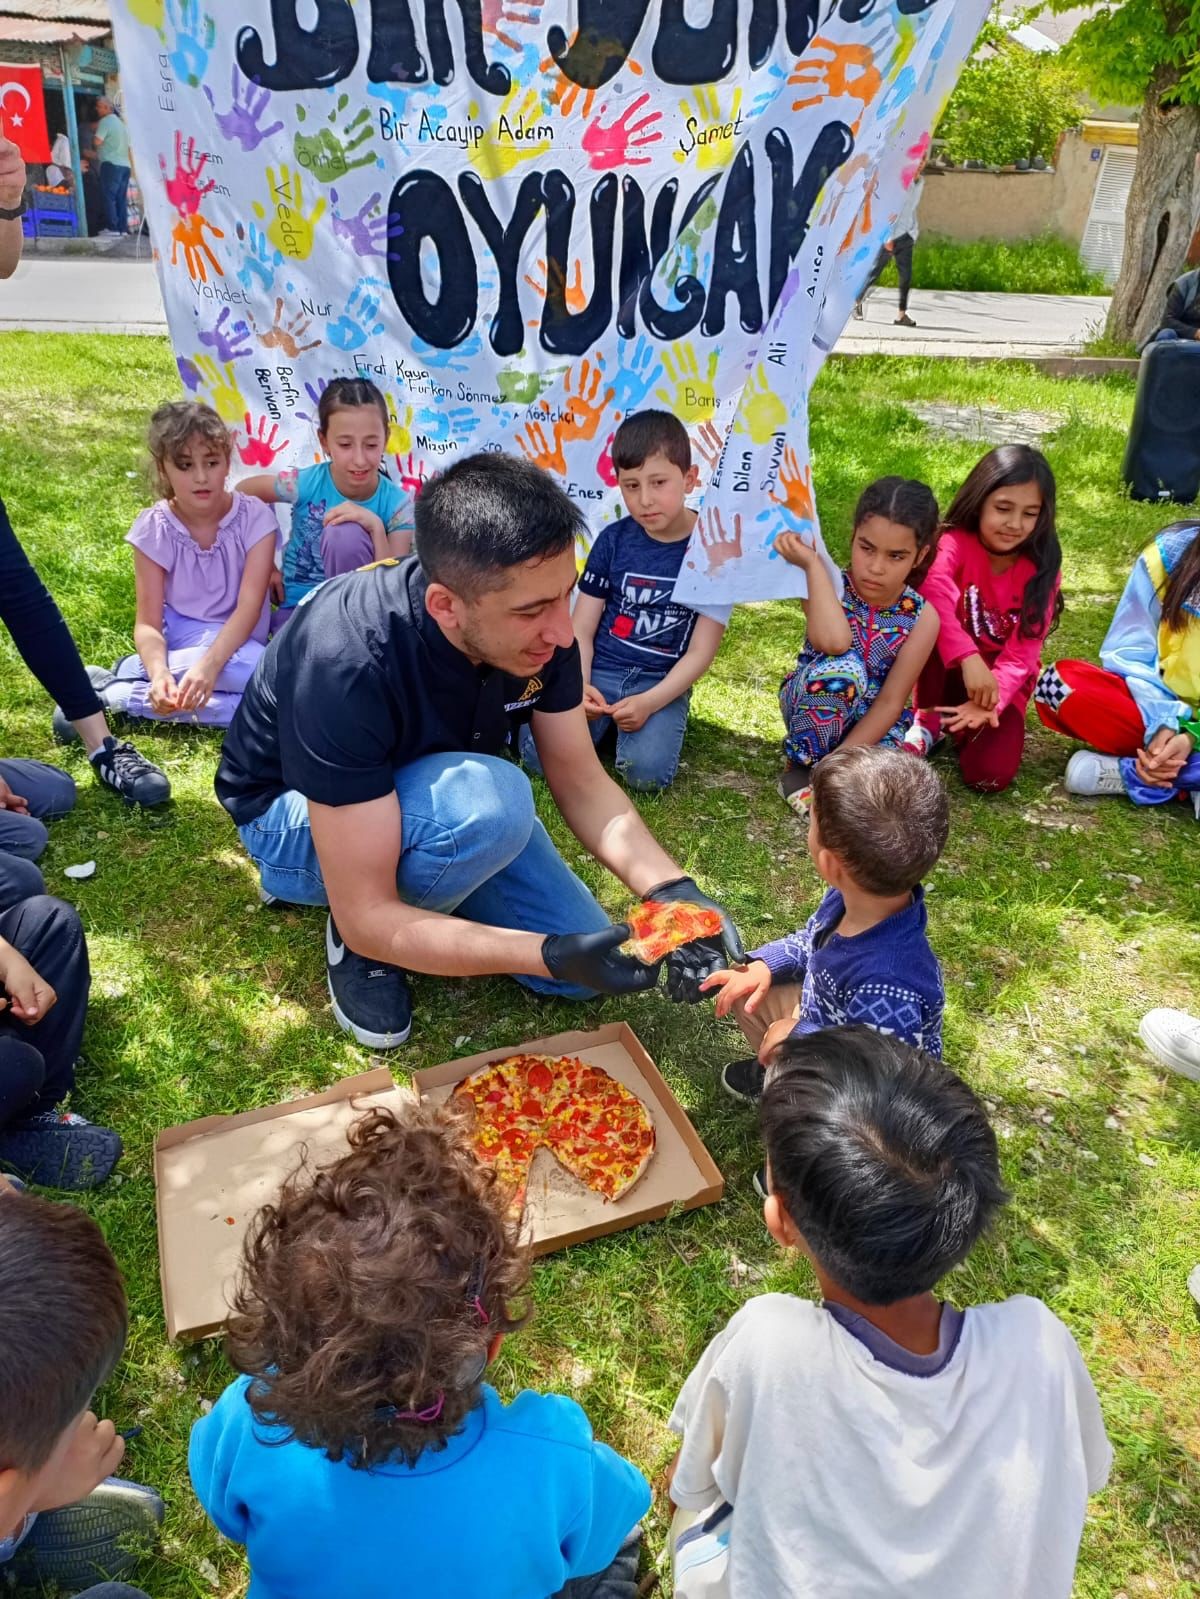 Parkta eğlenen çocuklara pizza sürprizi
